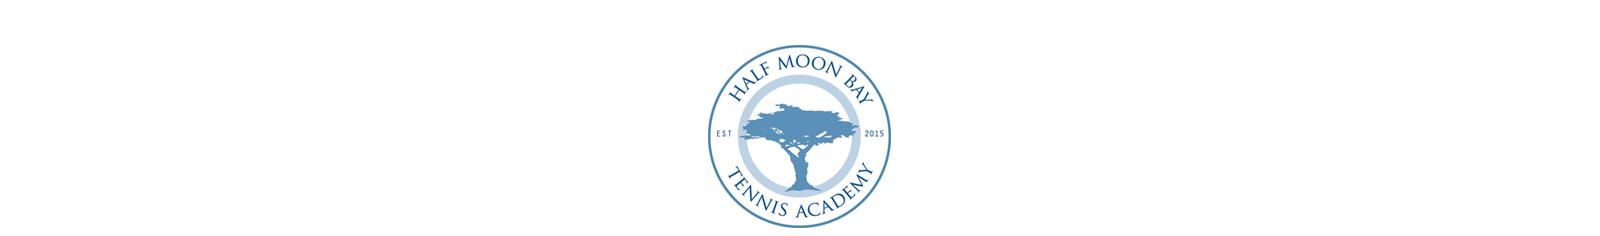 Half Moon Bay Tennis Academy